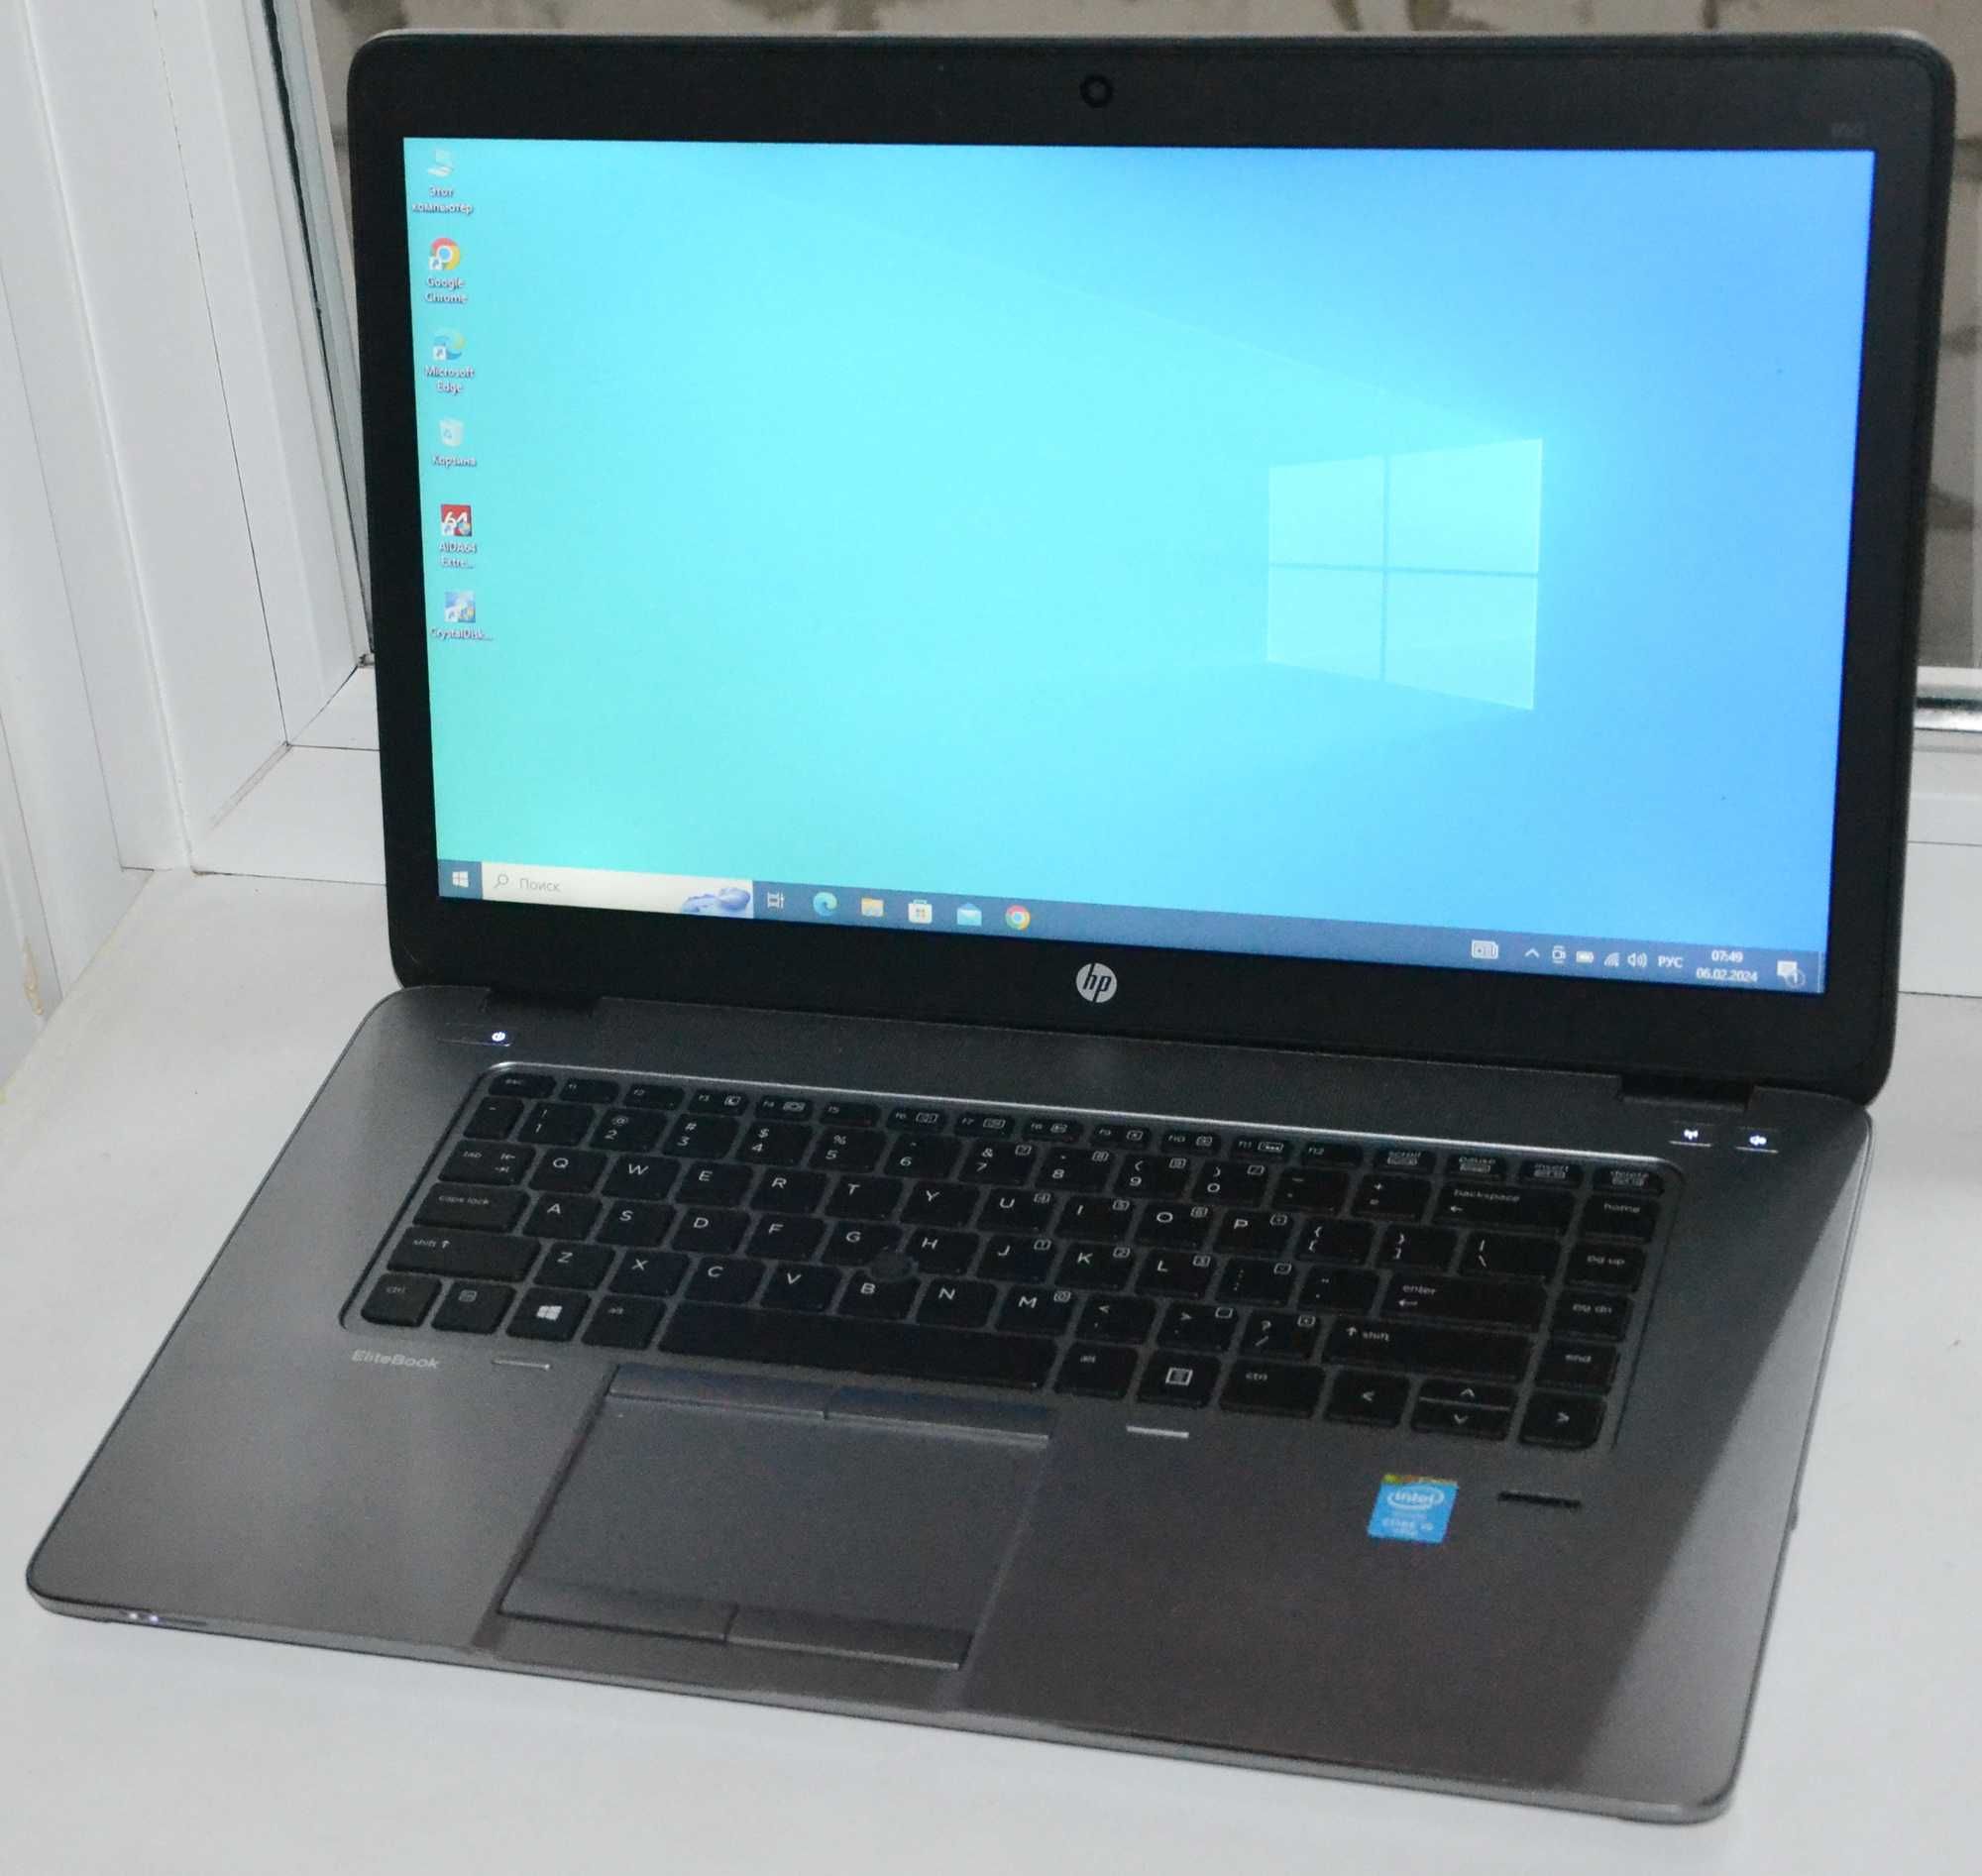 Ноутбук HP EliteBook 850 G2 I5-5300U 2.3GHz 8Gb/SSD 256Gb 15.6"